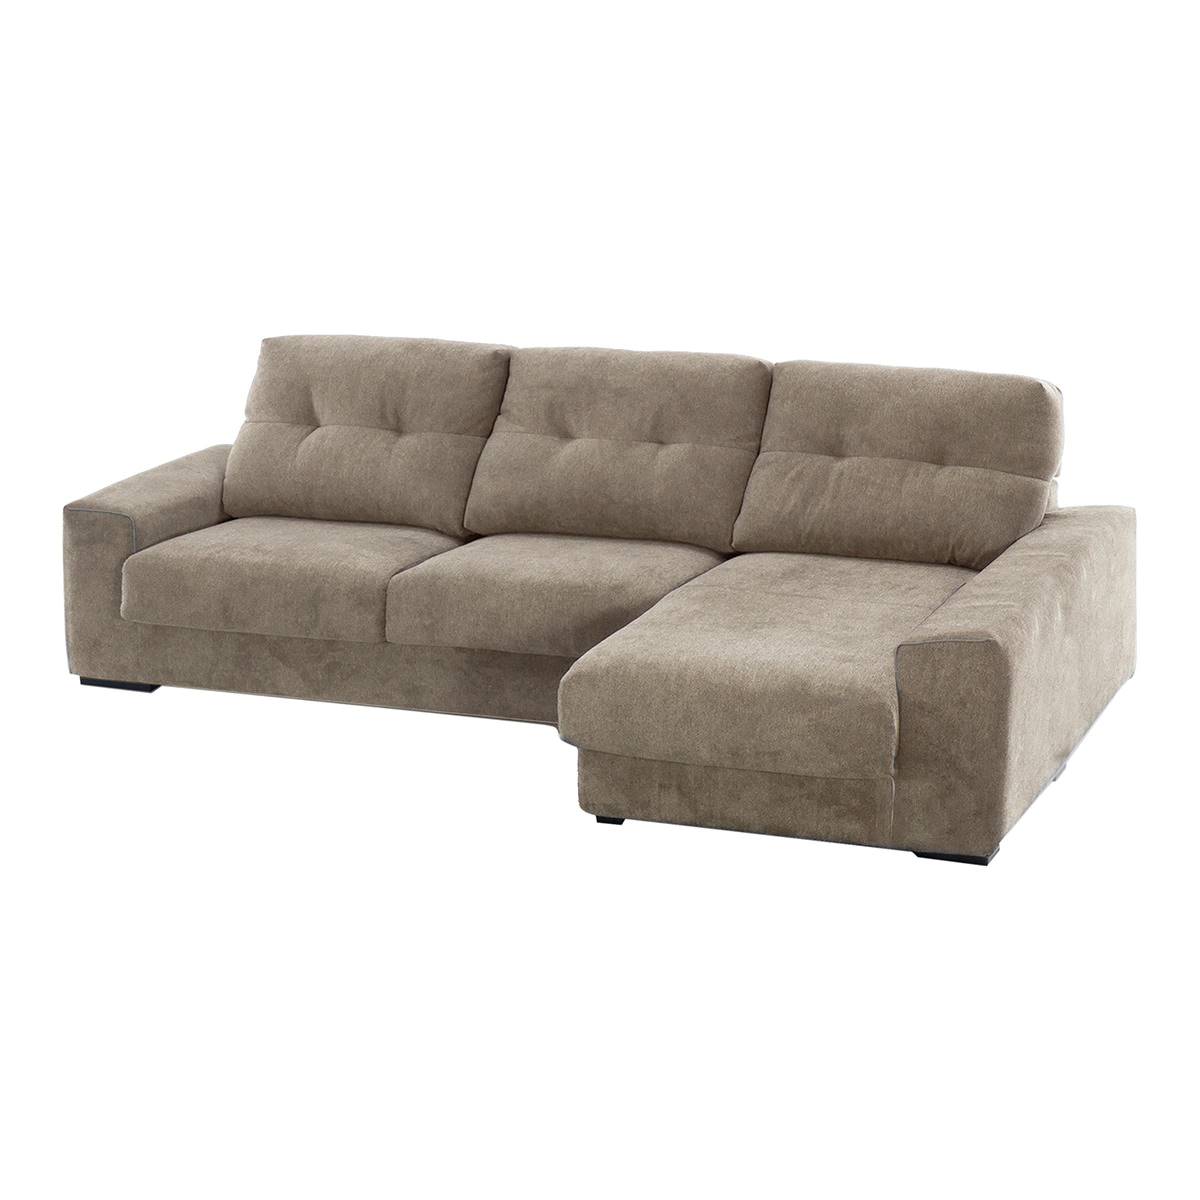 sofa chaise longue savoi 00112810911821 eci